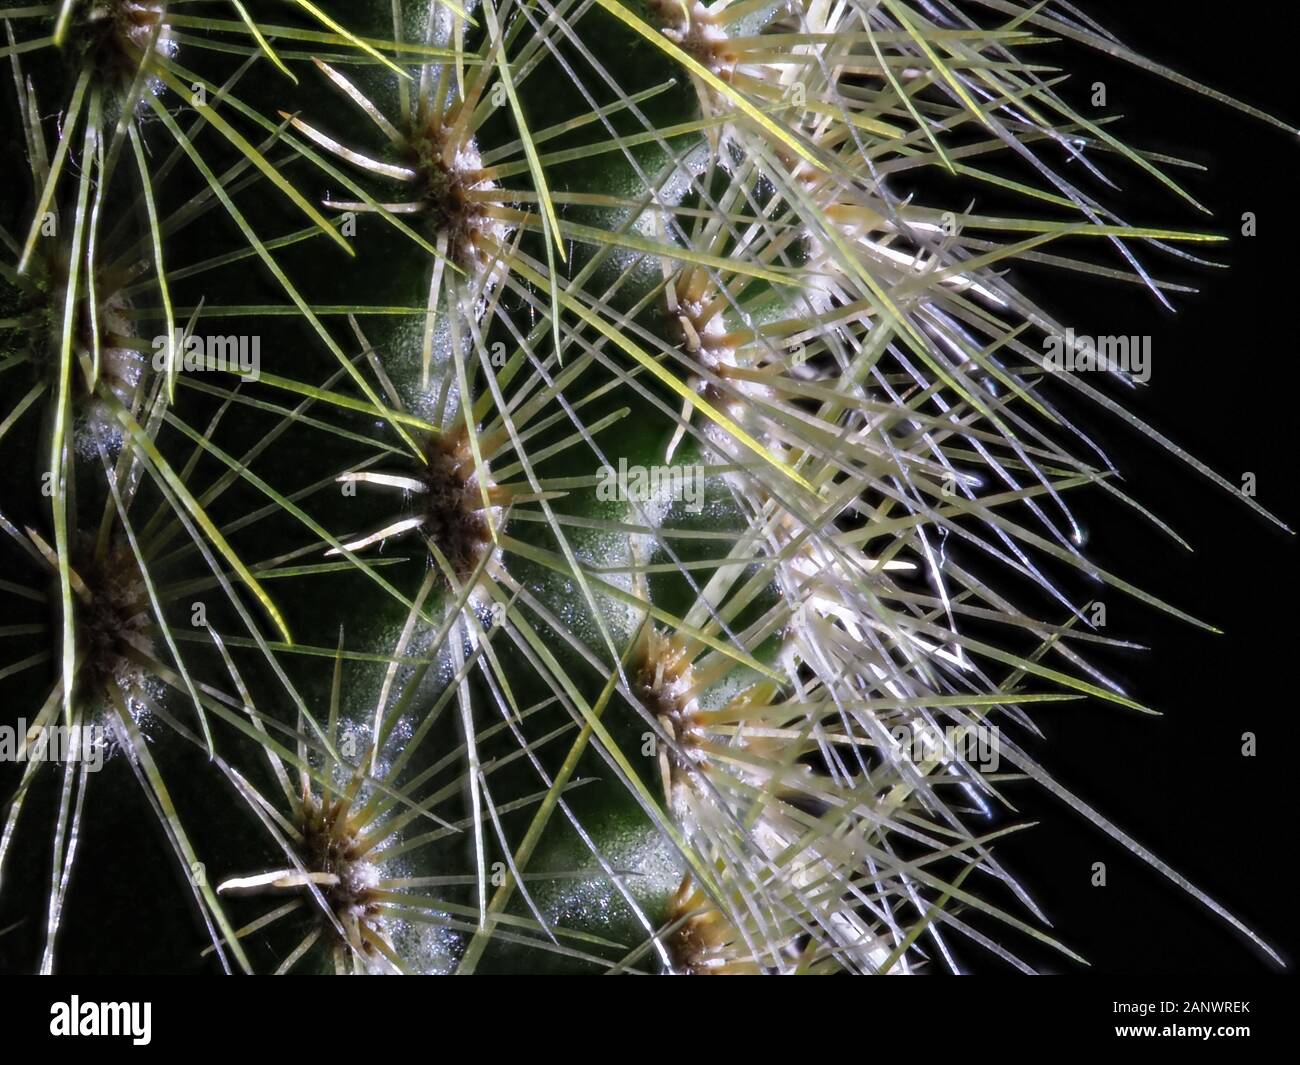 Pilosocereus cactus close-up of spines Stock Photo